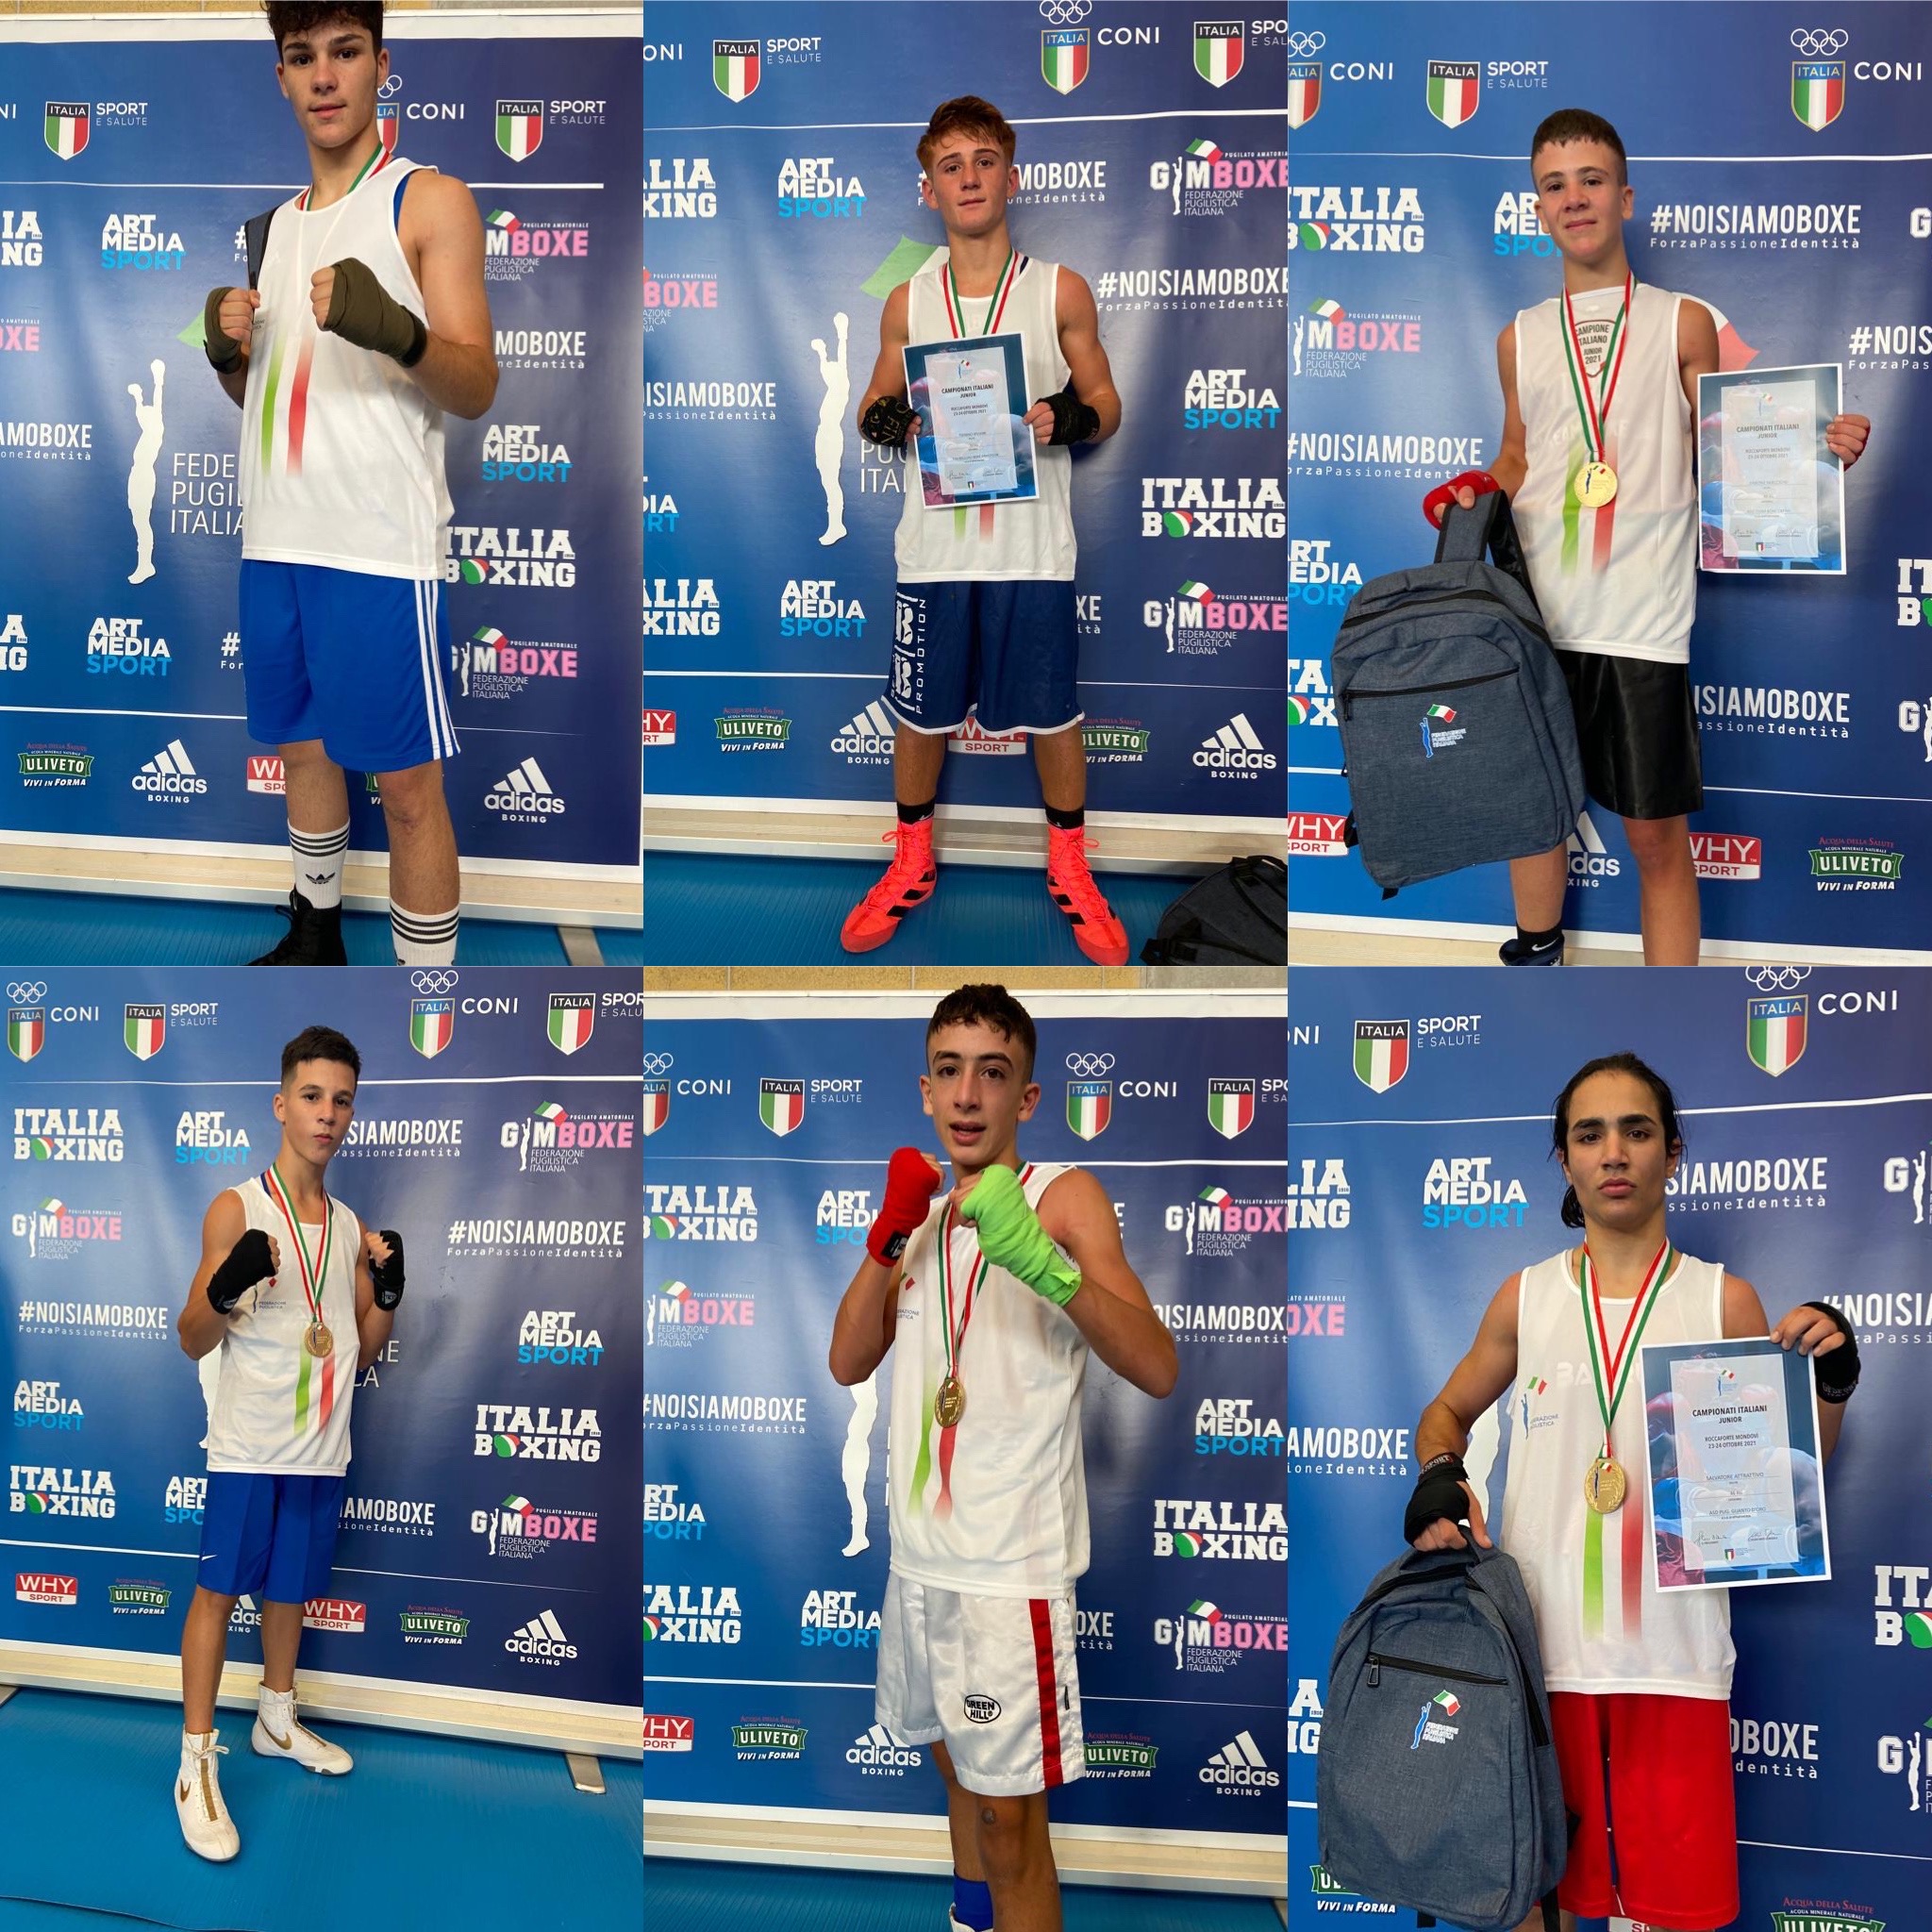 Fasi Finali Campionati Italiani SchoolBoy/Junior 2021 - Roccaforte Mondovì 23-24 Ottobre - I NUOVI CAMPIONI D'ITALIA 